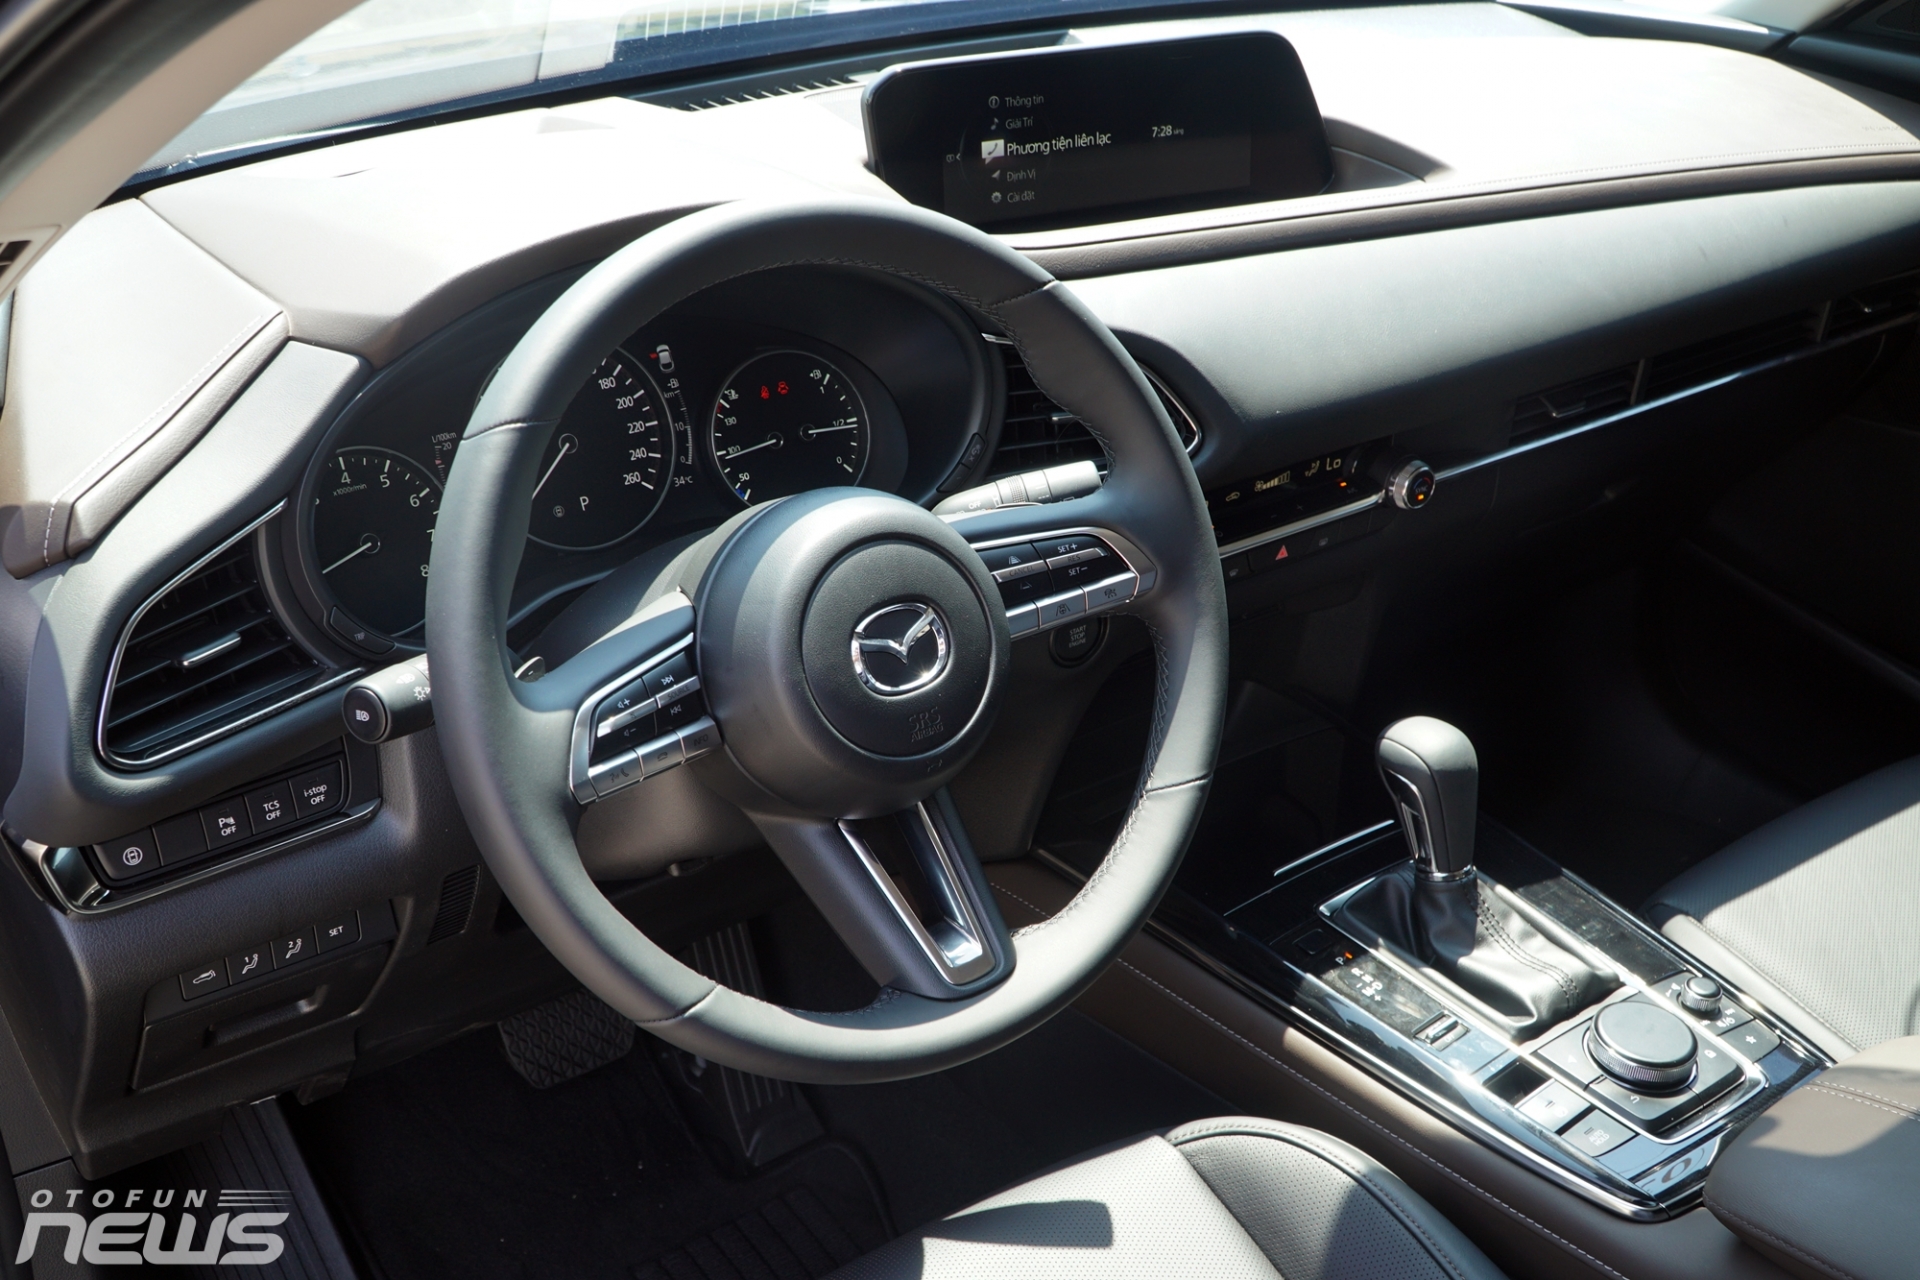 Mazda ra mắt bộ đôi CX-3 và CX-30